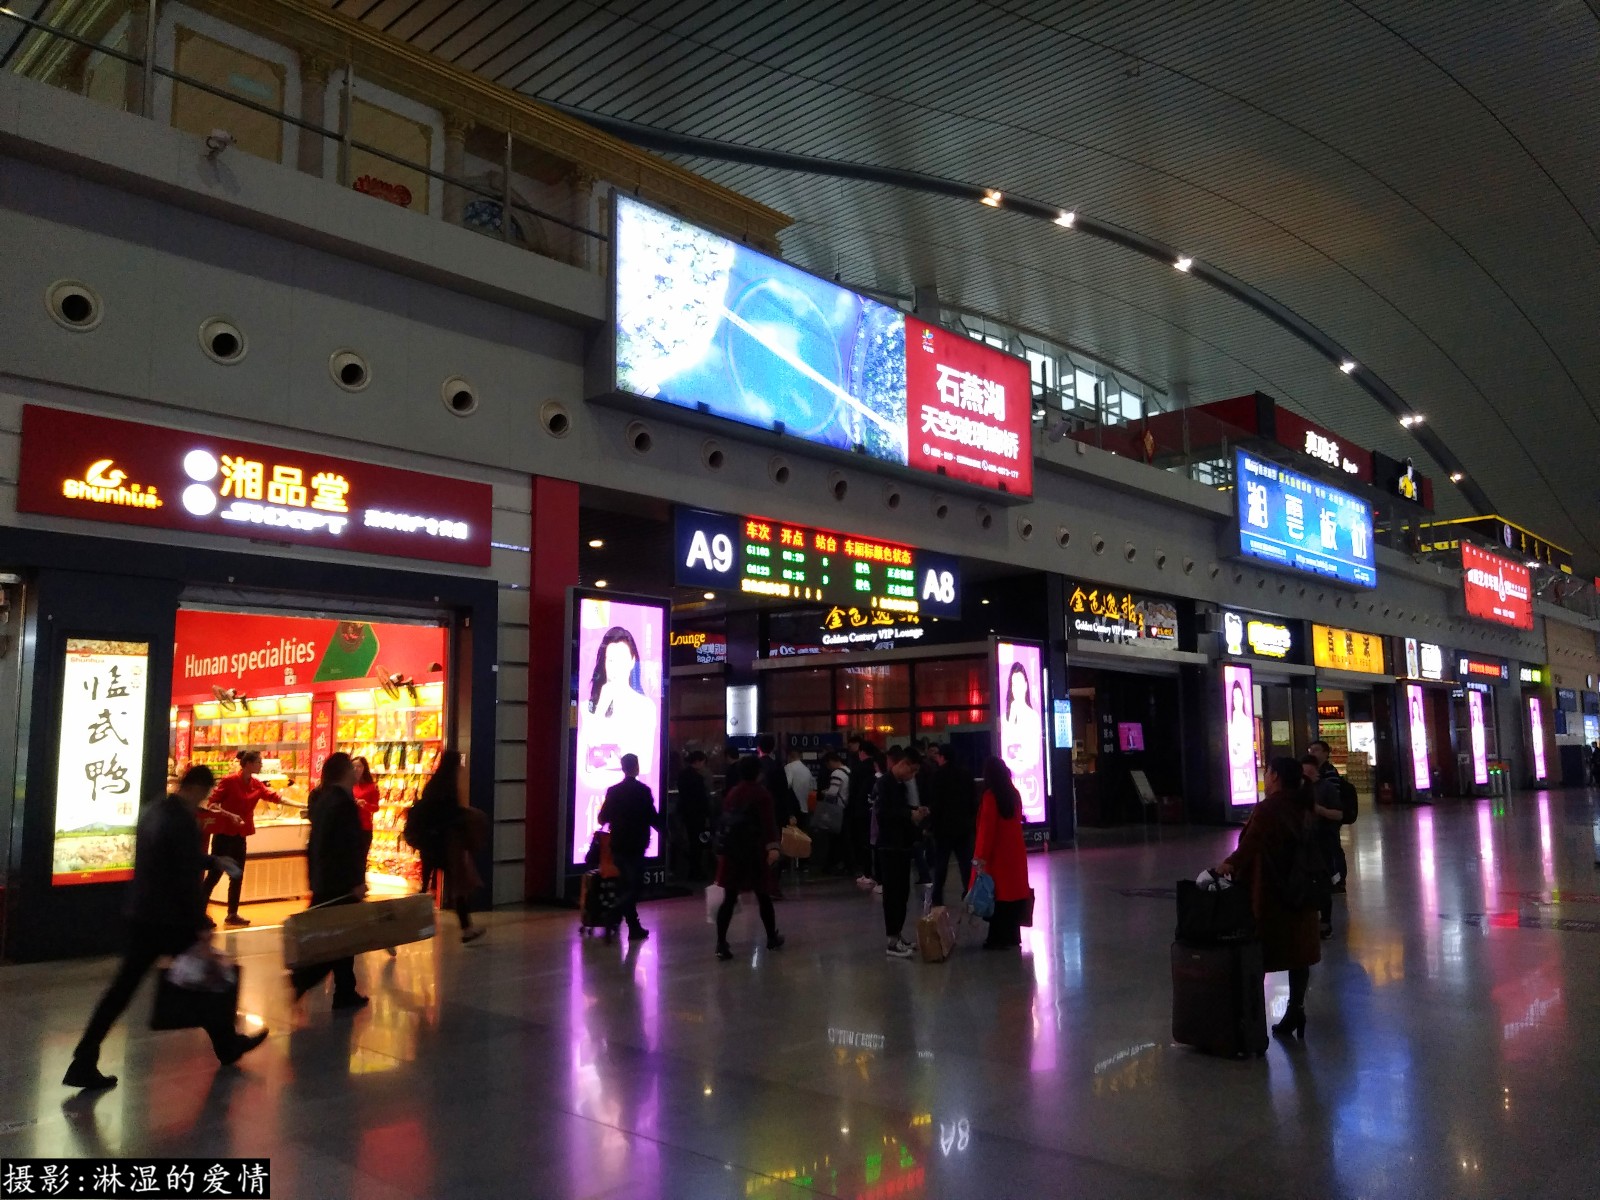 长沙火车站内部图片